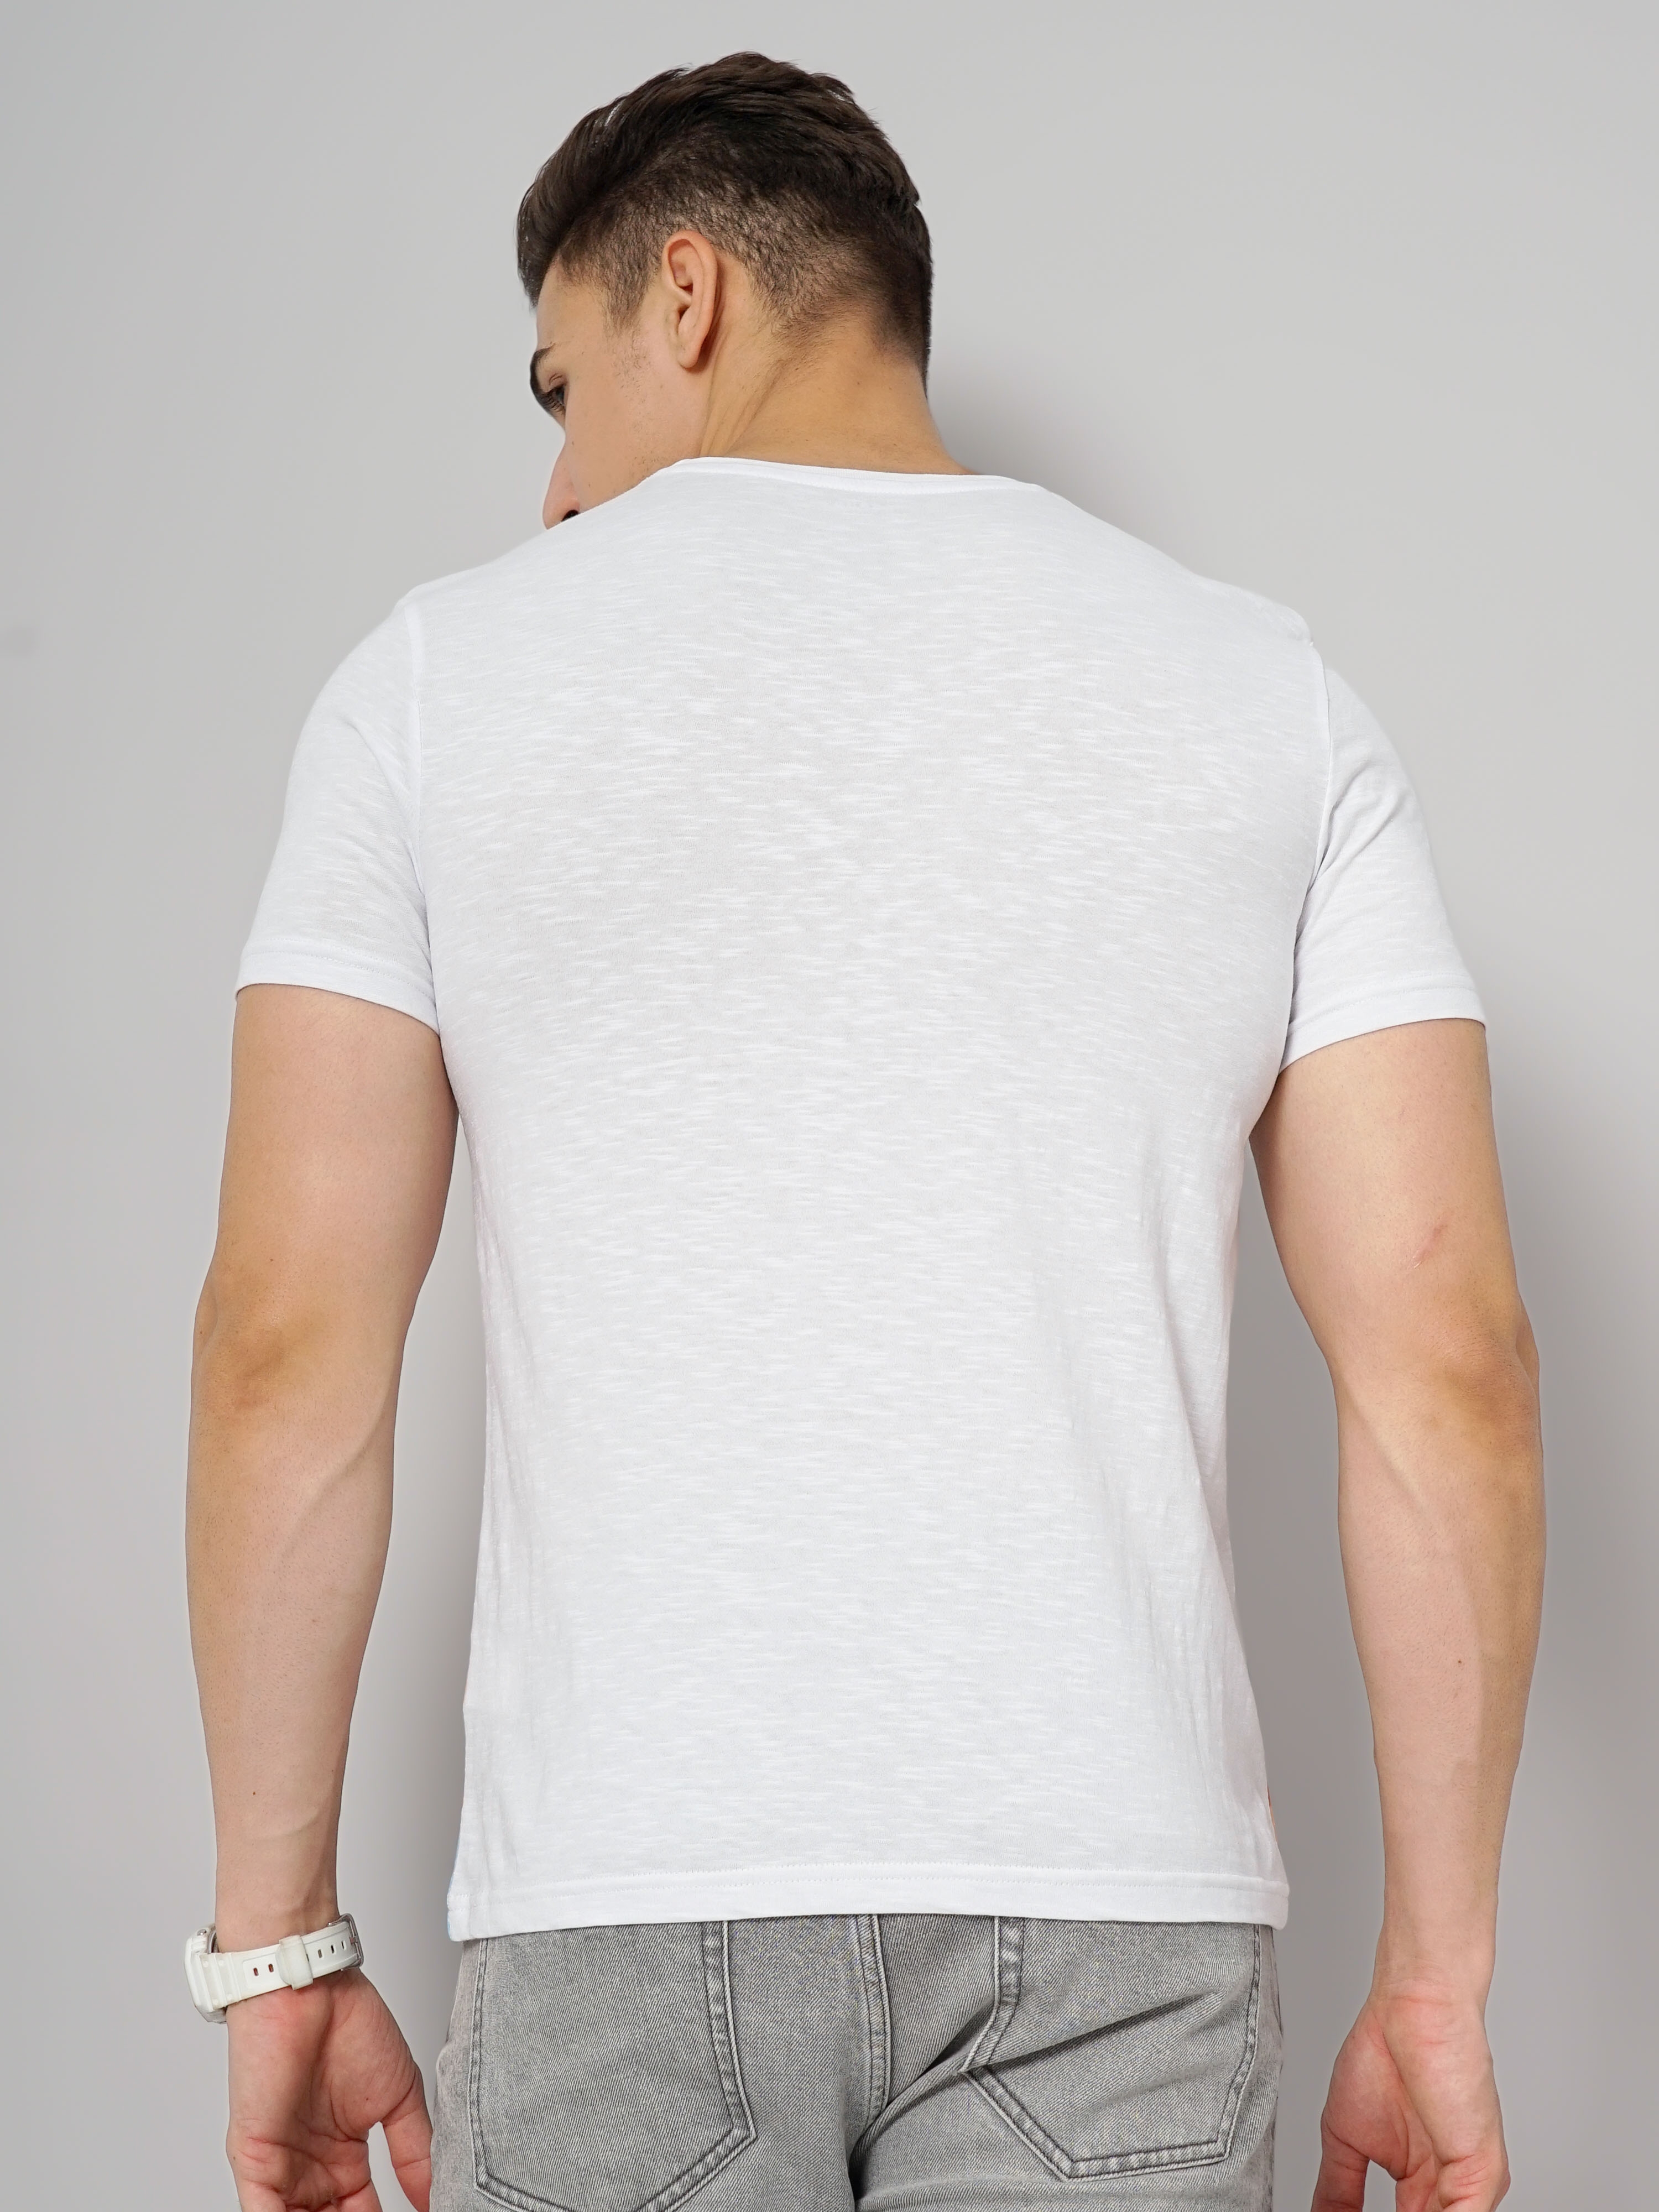 Men's White Knitted Regular T-Shirts